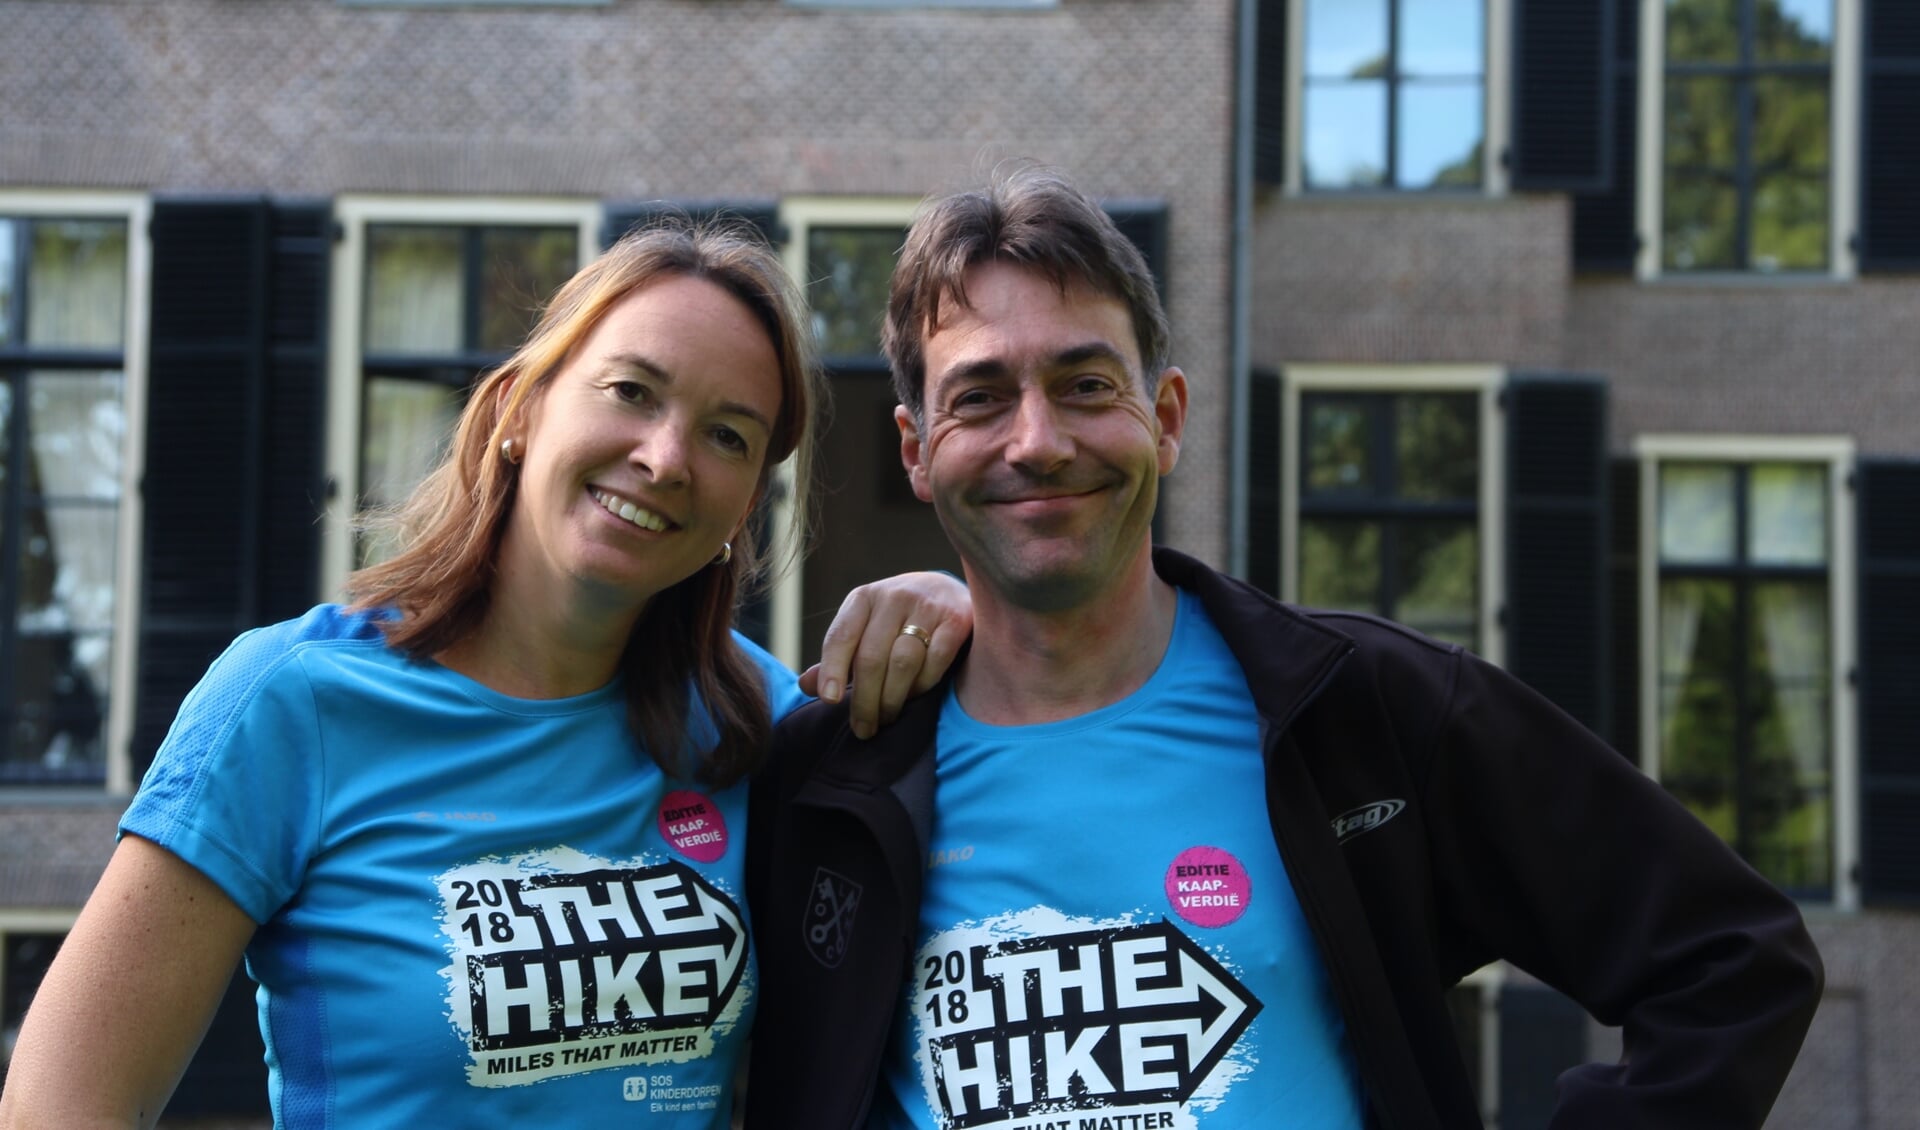 Johan Stakenburg en Annette Timmermans uit Oegstgeest gaan 24 uur hiken op Kaapverdië. 